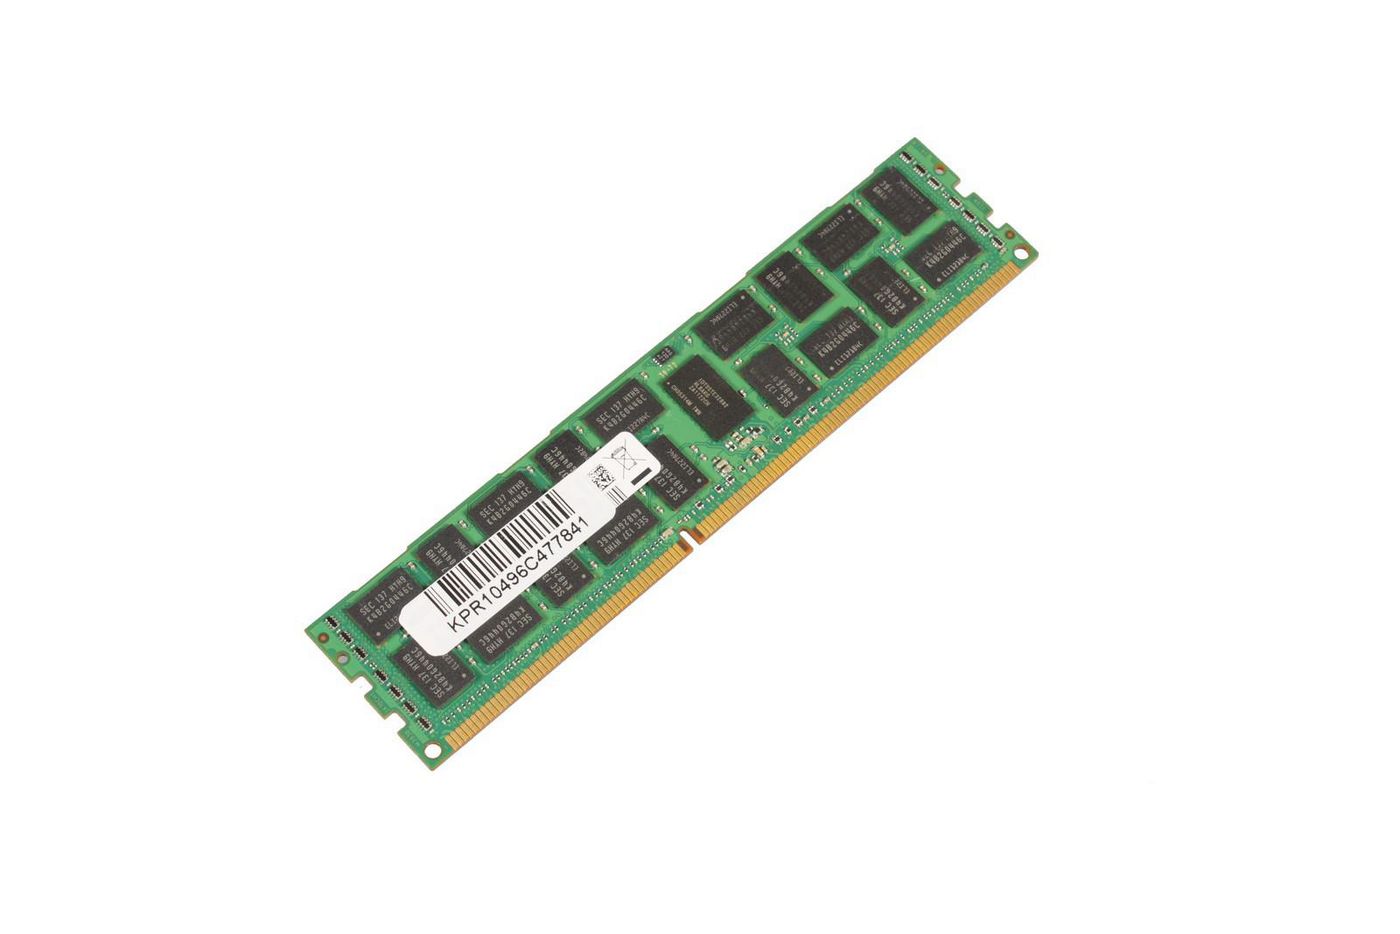 MICROMEMORY - DDR3L - 8GB - DIMM 240-PIN - 1333 MHz / PC3L-10600 registriert - ECC